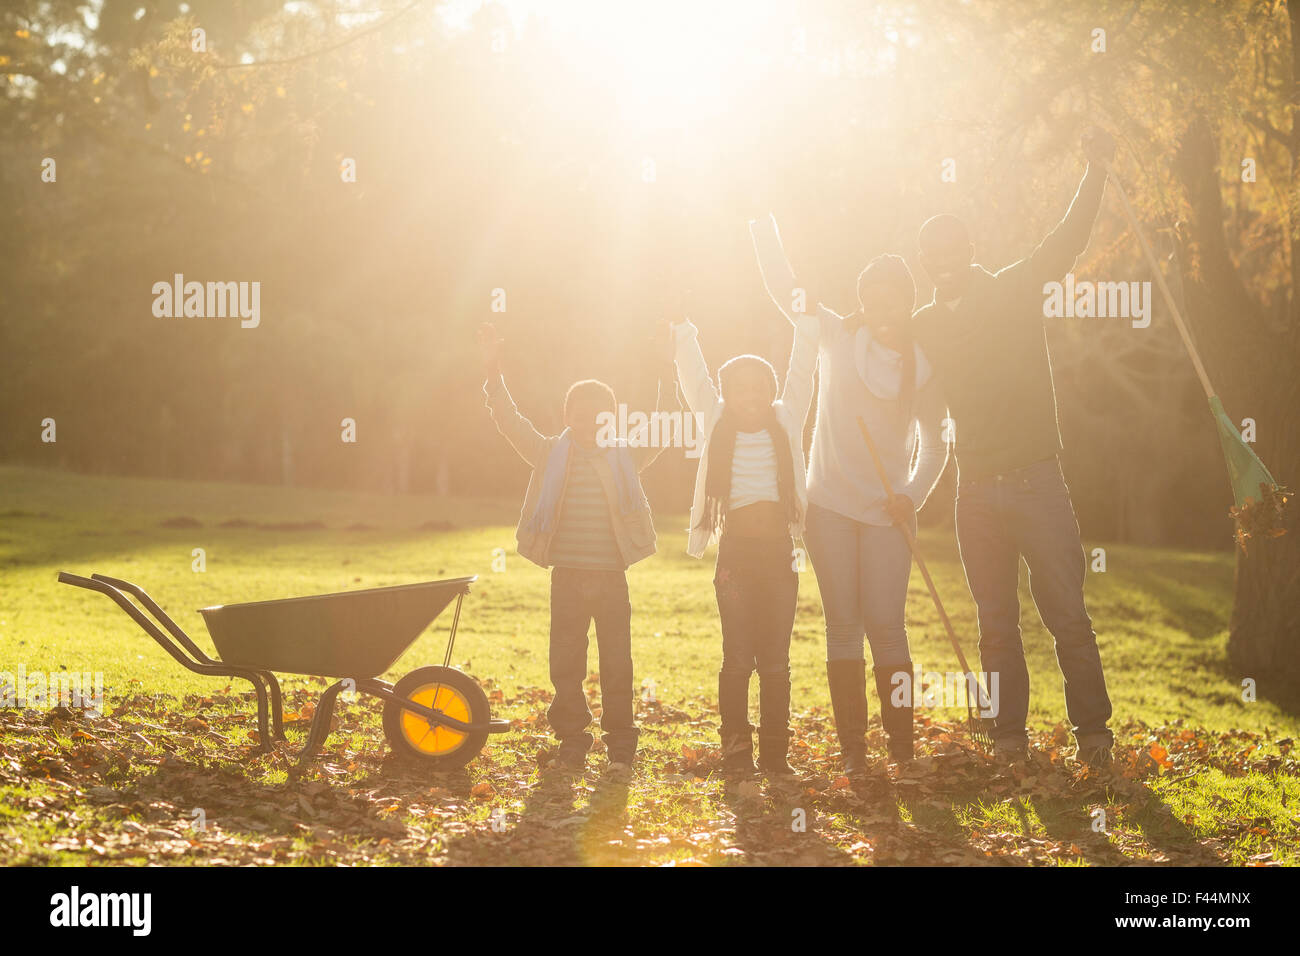 Jung, lächelnd, Familie posieren zusammen mit erhobenen Armen Stockfoto